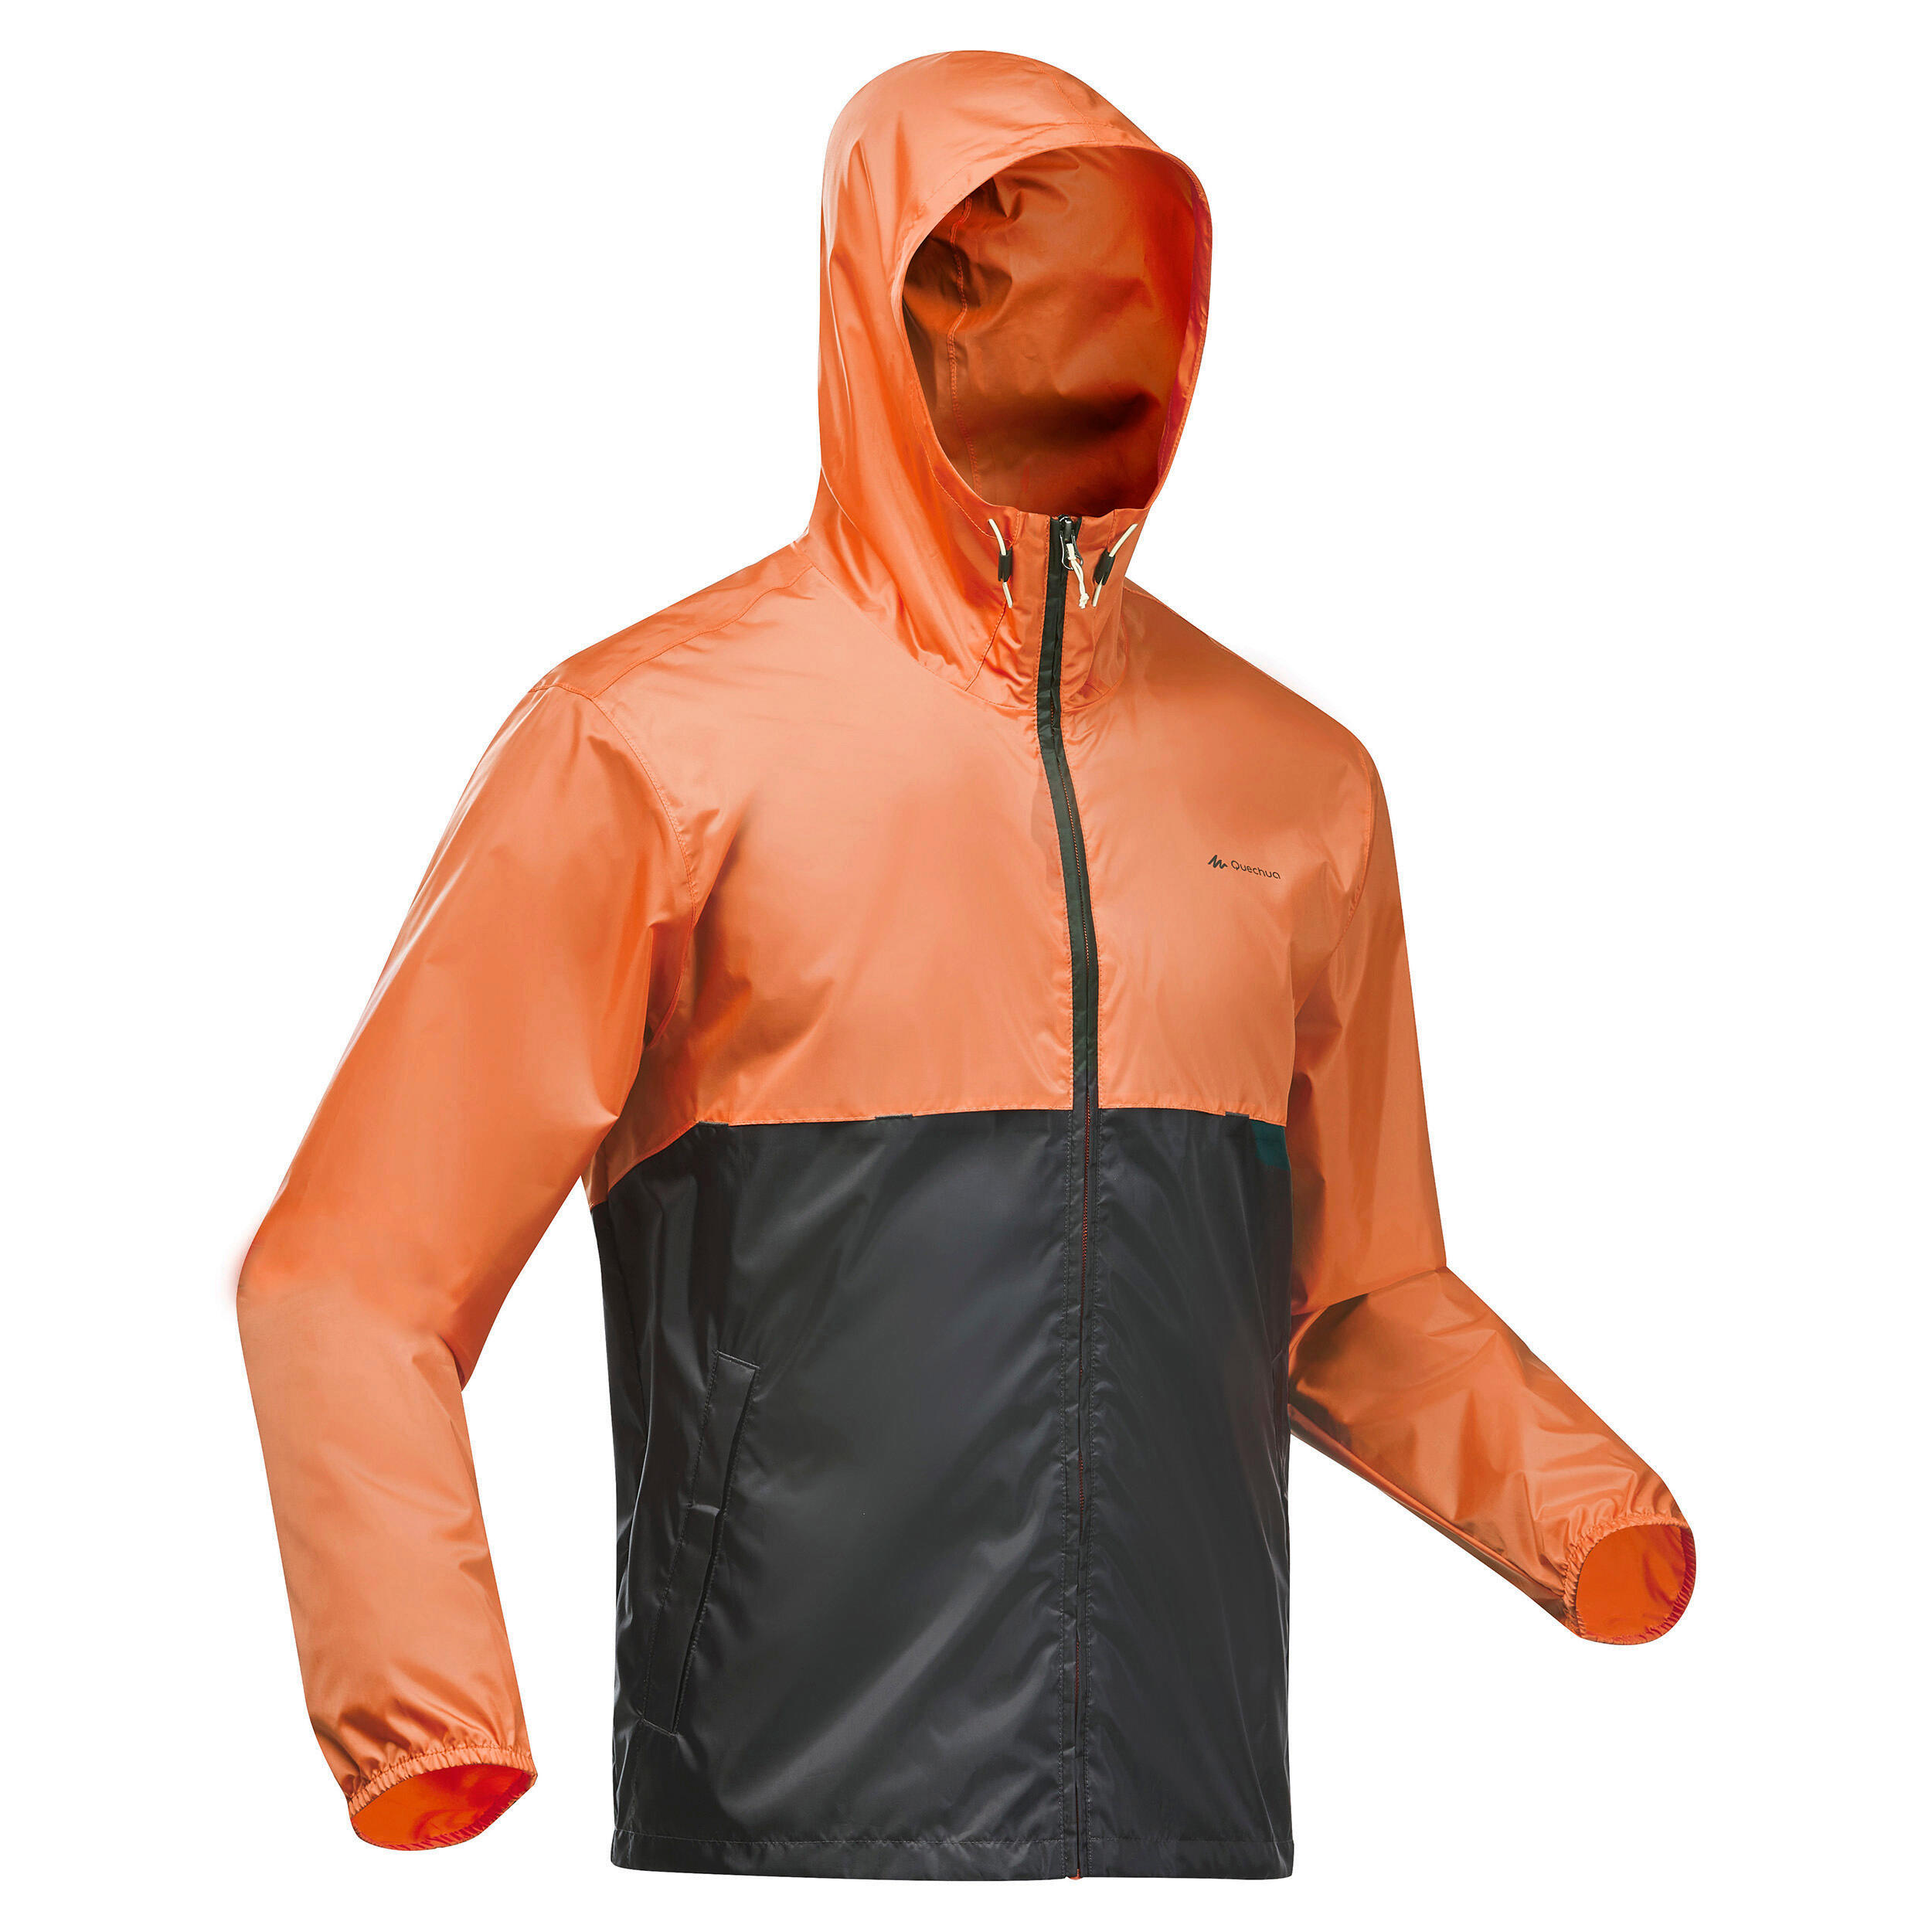 Jachetă Impermeabilă cu fermoar Drumeție Raincut Portocaliu-Gri Bărbați decathlon.ro  Imbracaminte trekking si drumetie